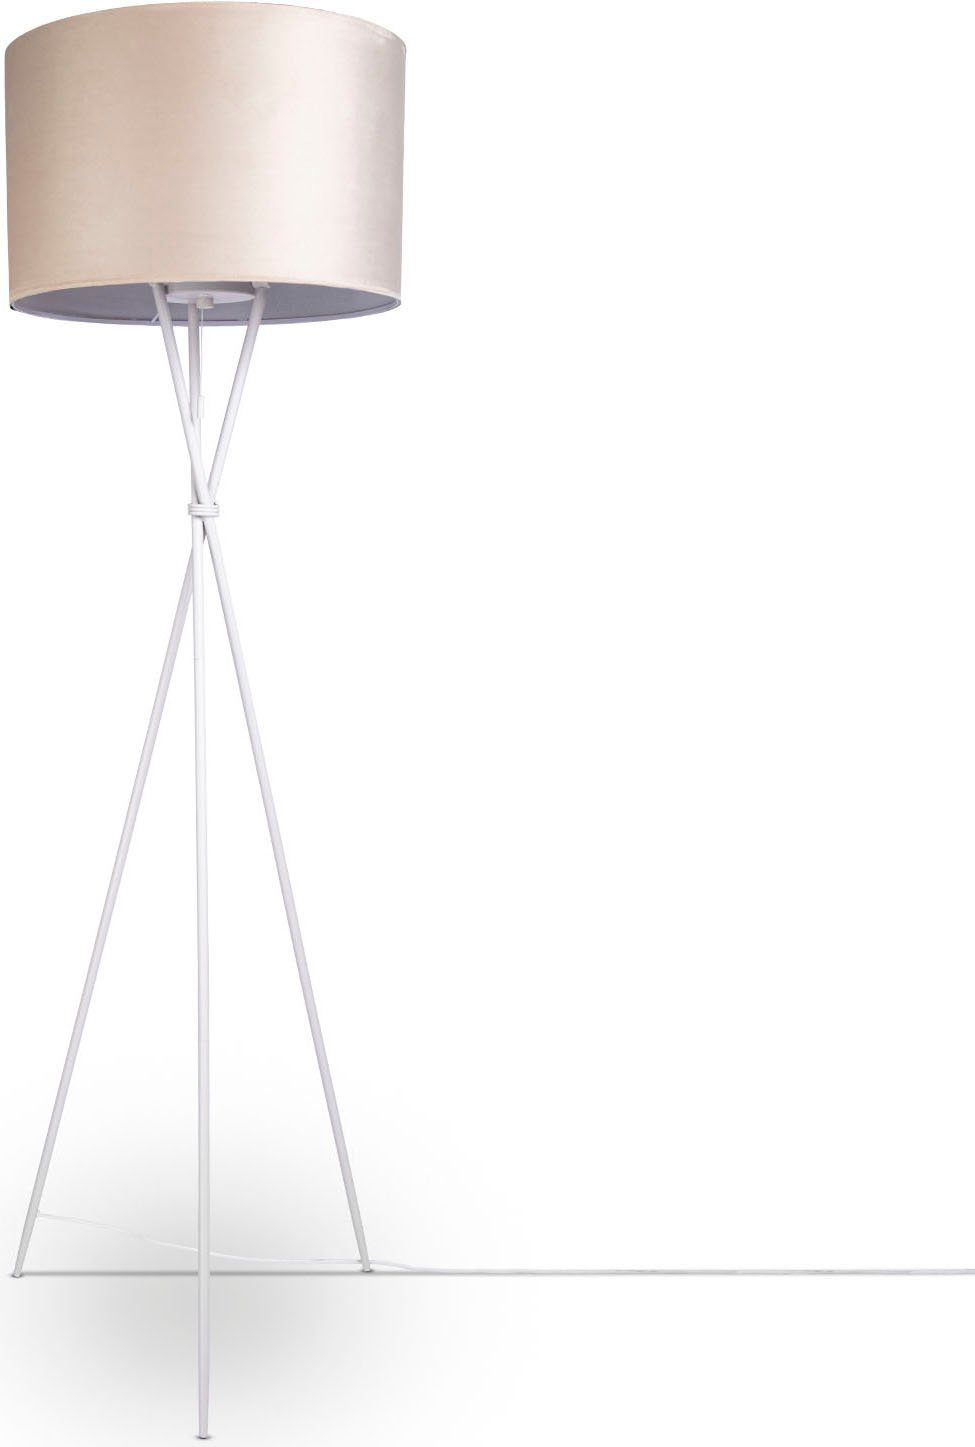 Paco OTTO | online Home Lampen kaufen